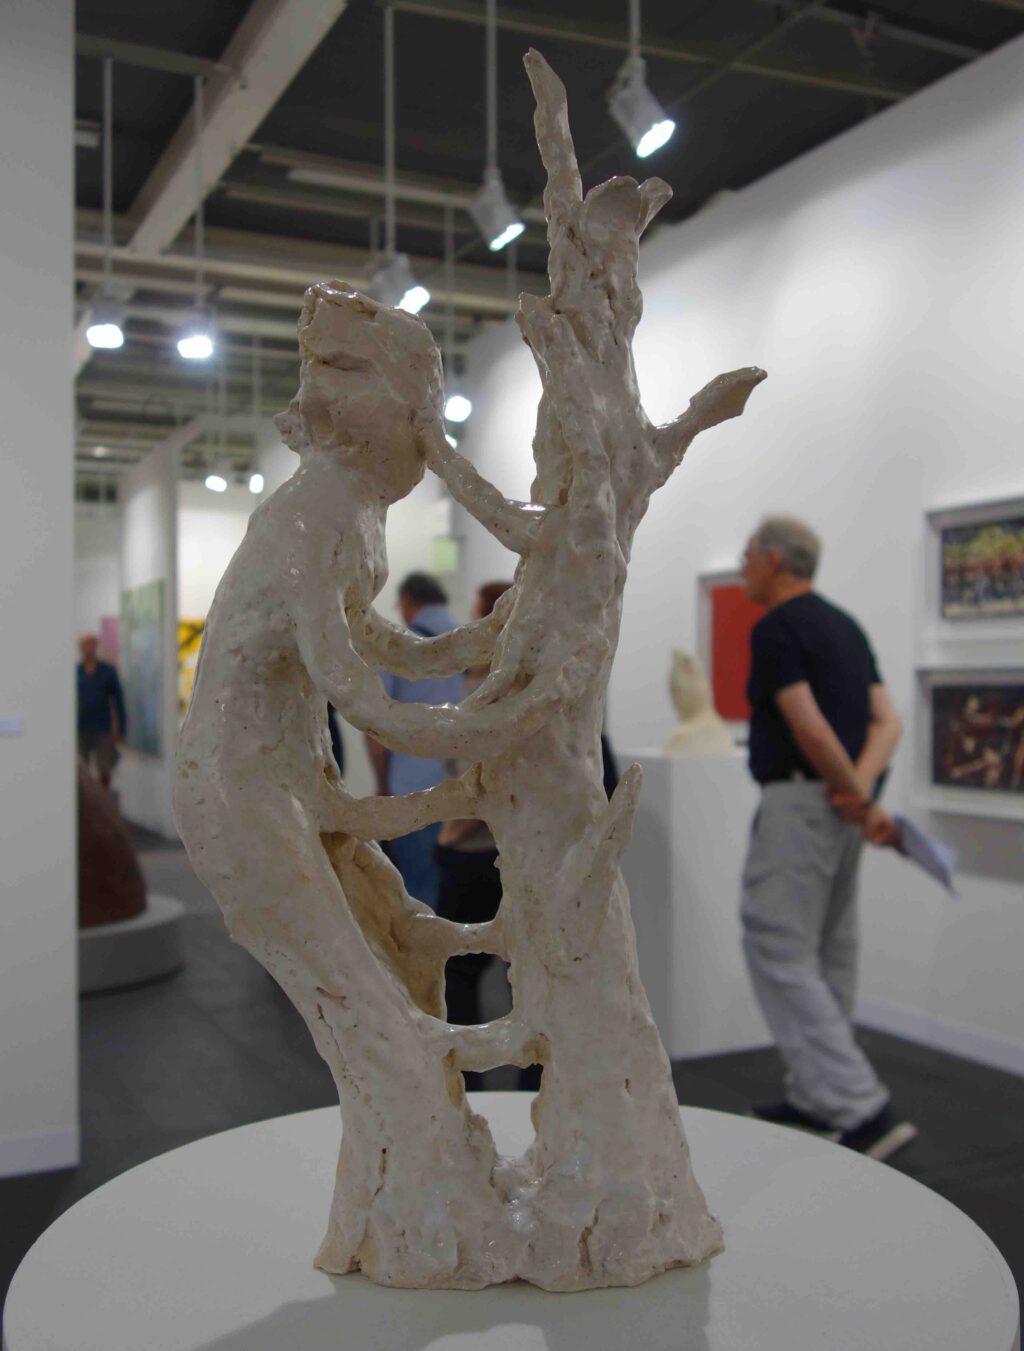 イケムラレイコ IKEMURA Leiko Waldwesen (Tree Figure) 2006, Terracotta, glaze, 57.2 x 14 x 26.7 cm (IKEM-0017) @ Fergus McCaffrey, Art Basel 2023